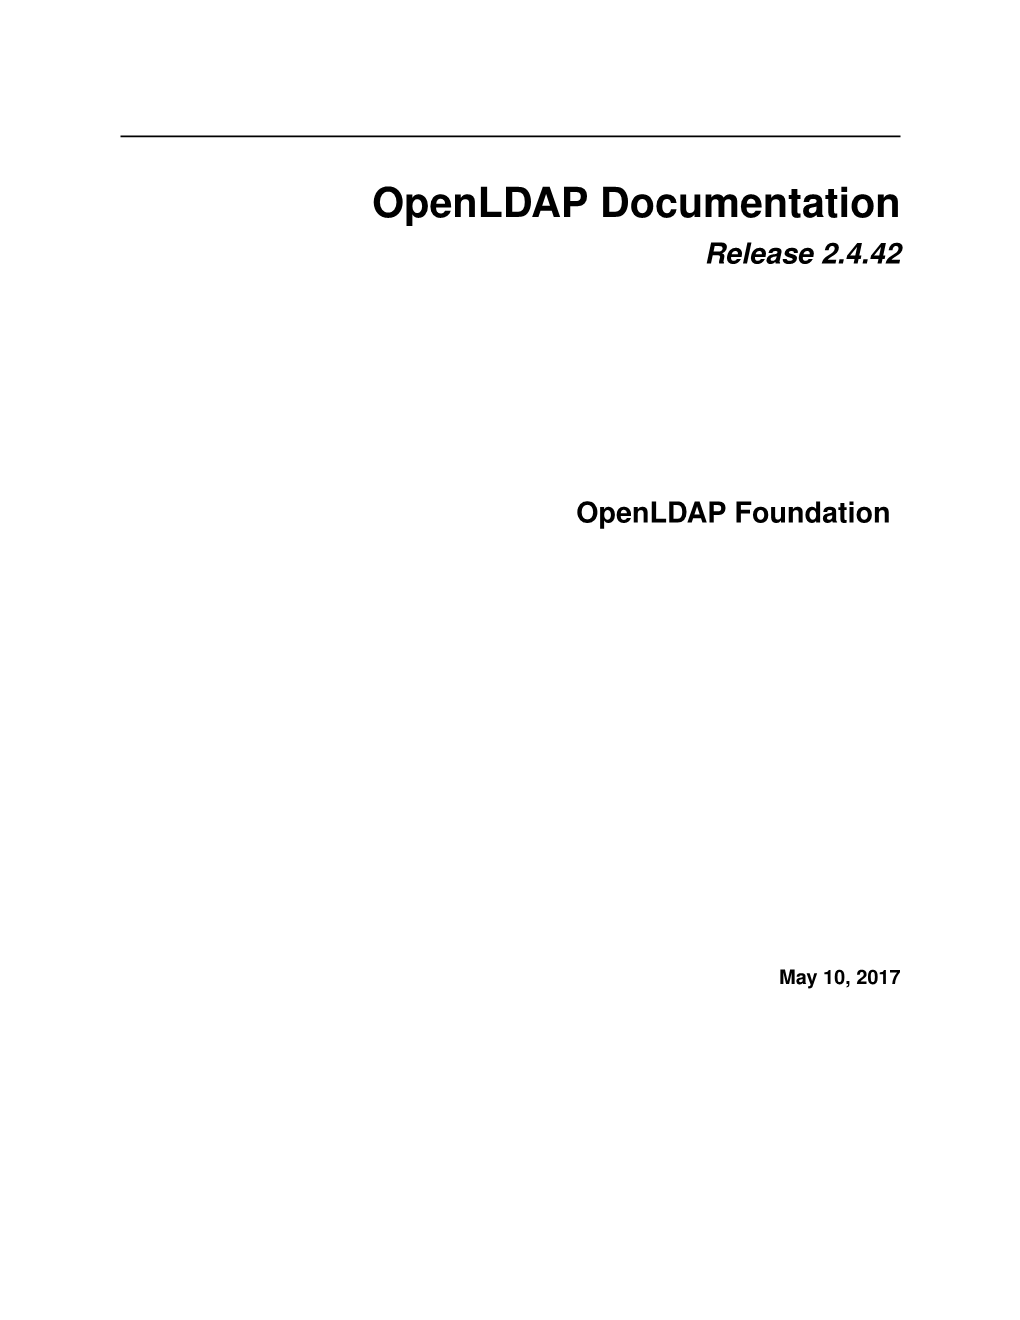 Openldap Documentation Release 2.4.42